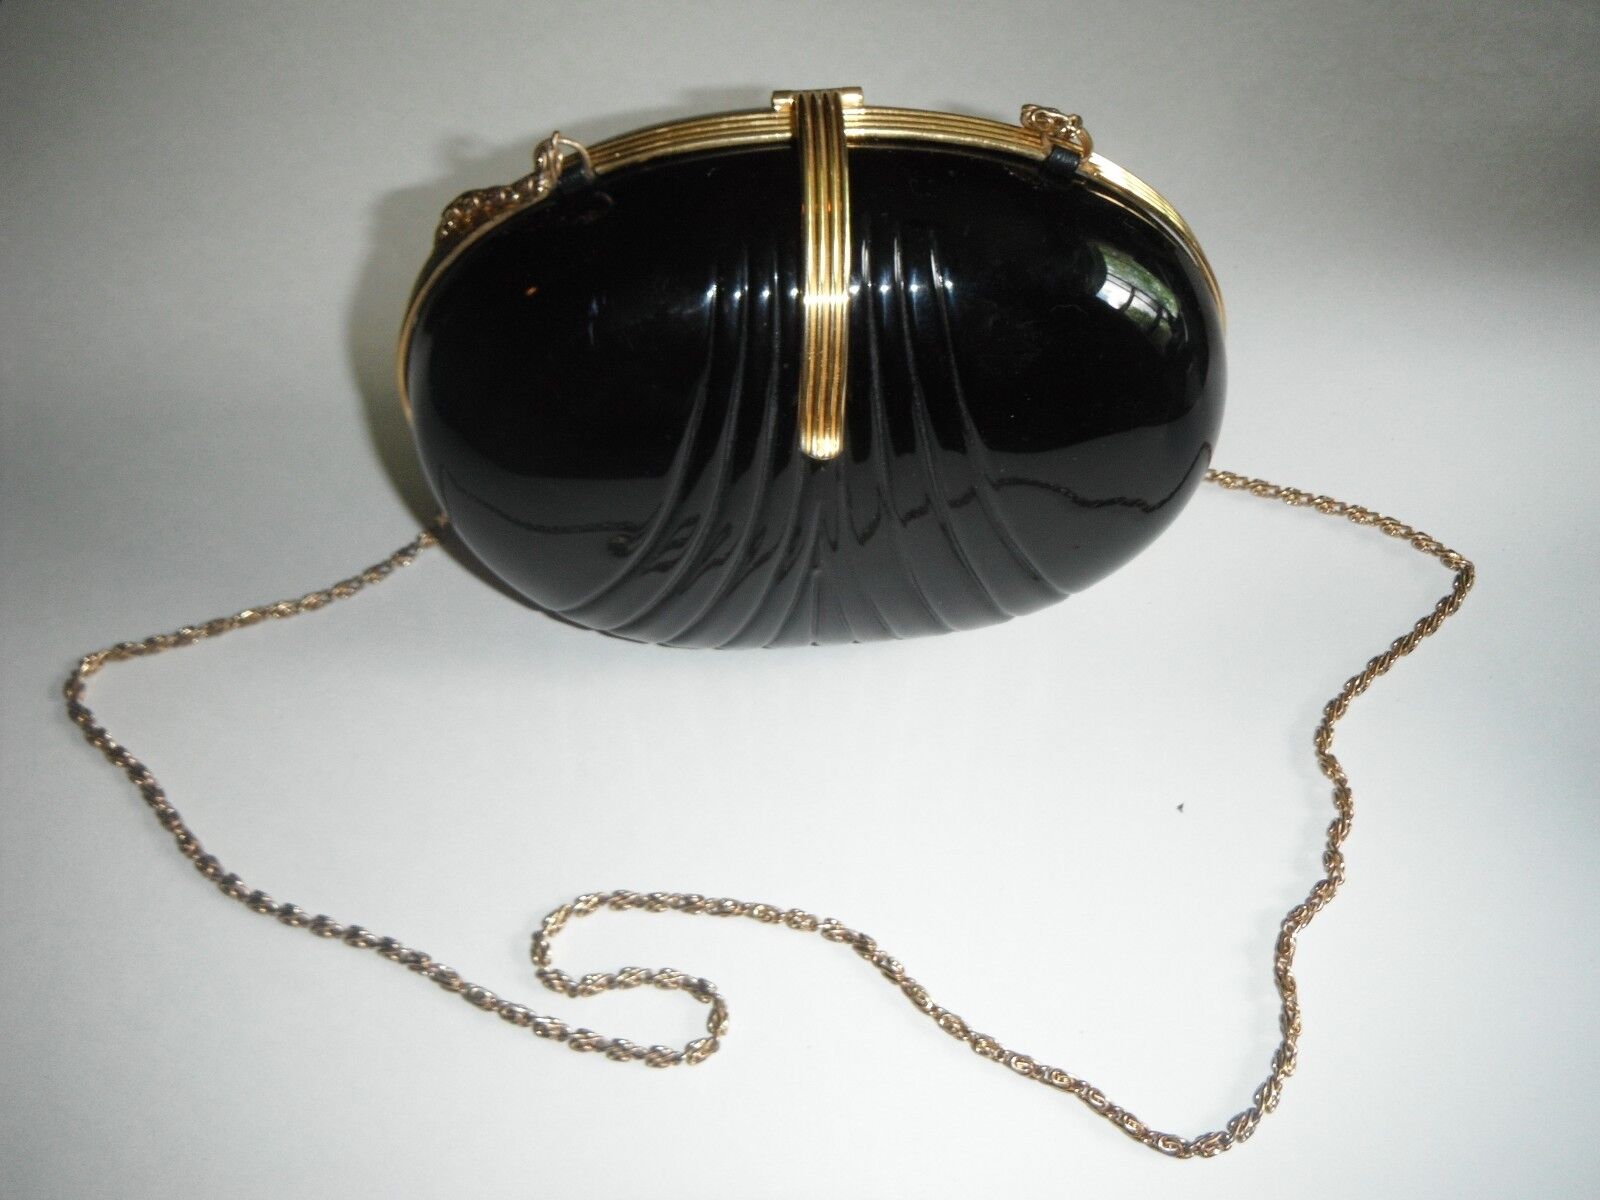 True VTG hard black plastic Art Deco oval purse gold tone clasp & chain strap